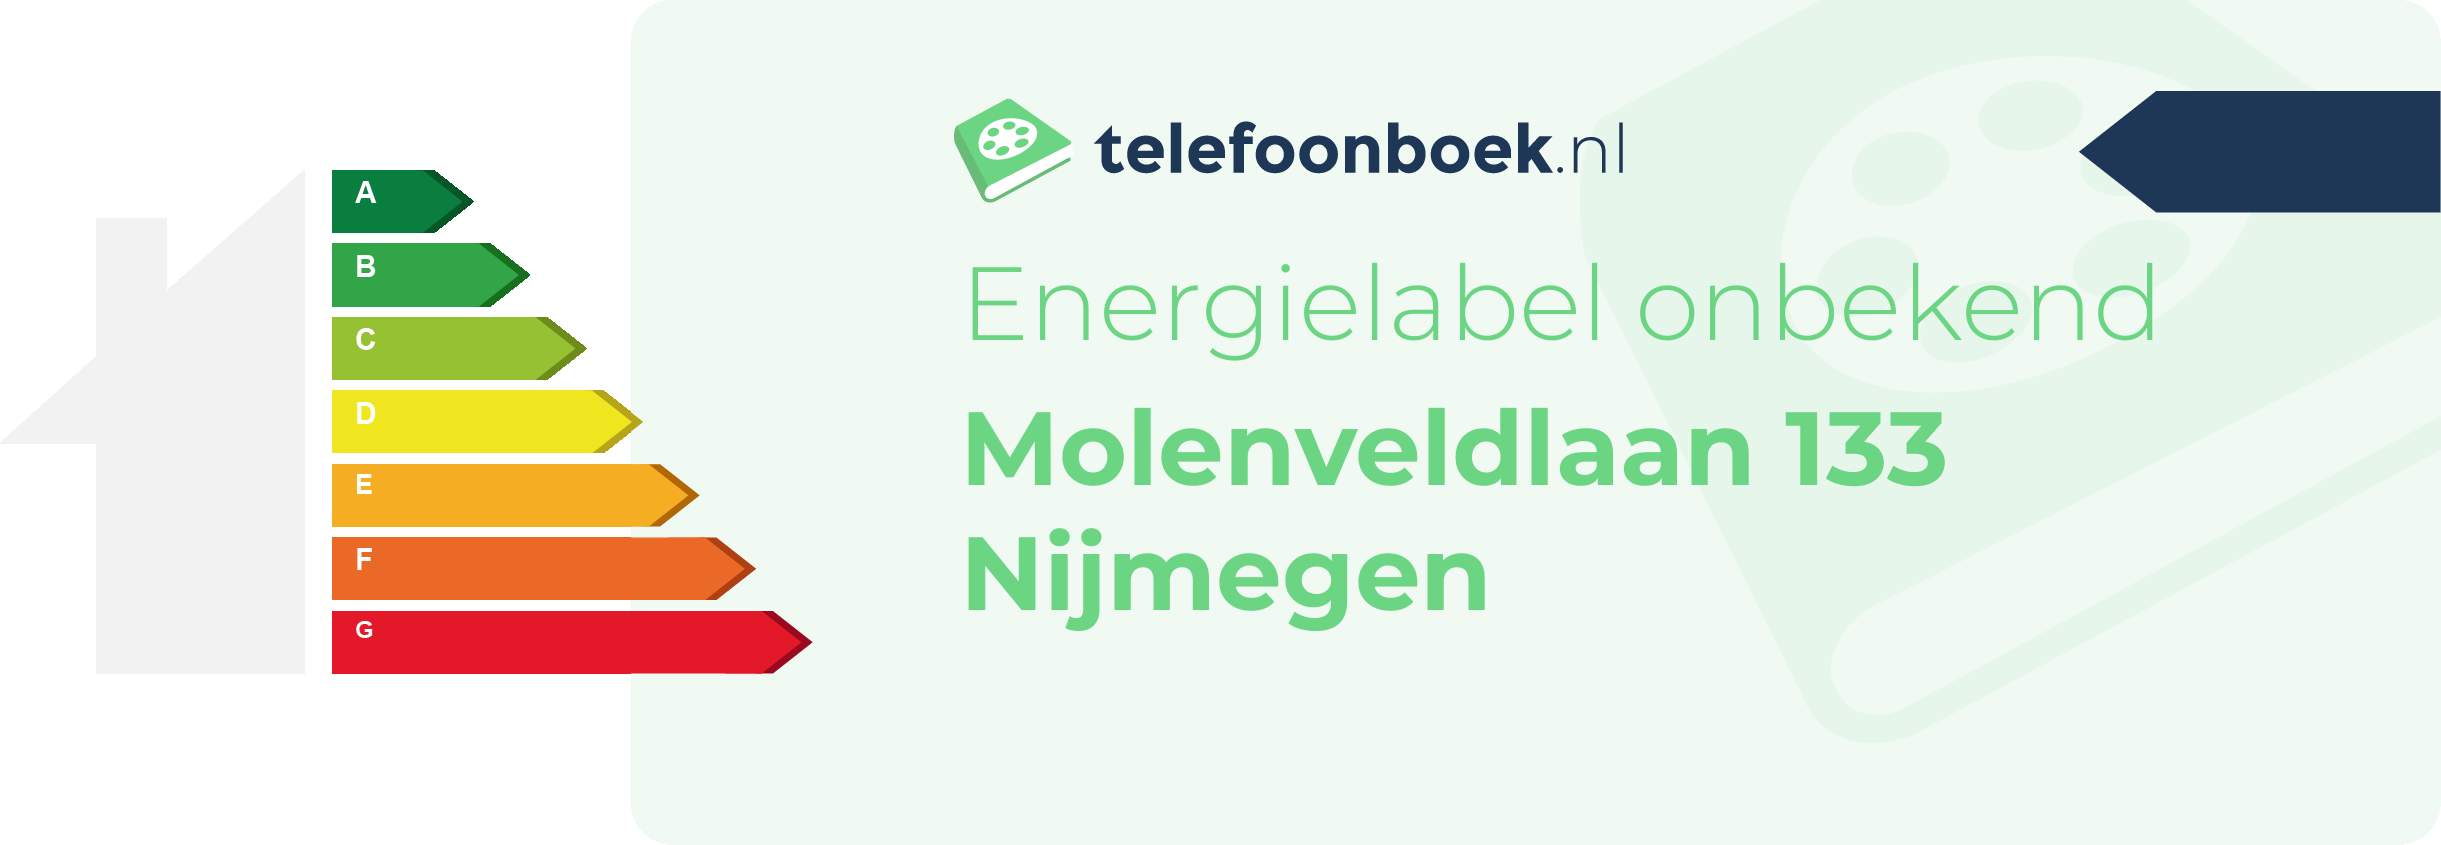 Energielabel Molenveldlaan 133 Nijmegen